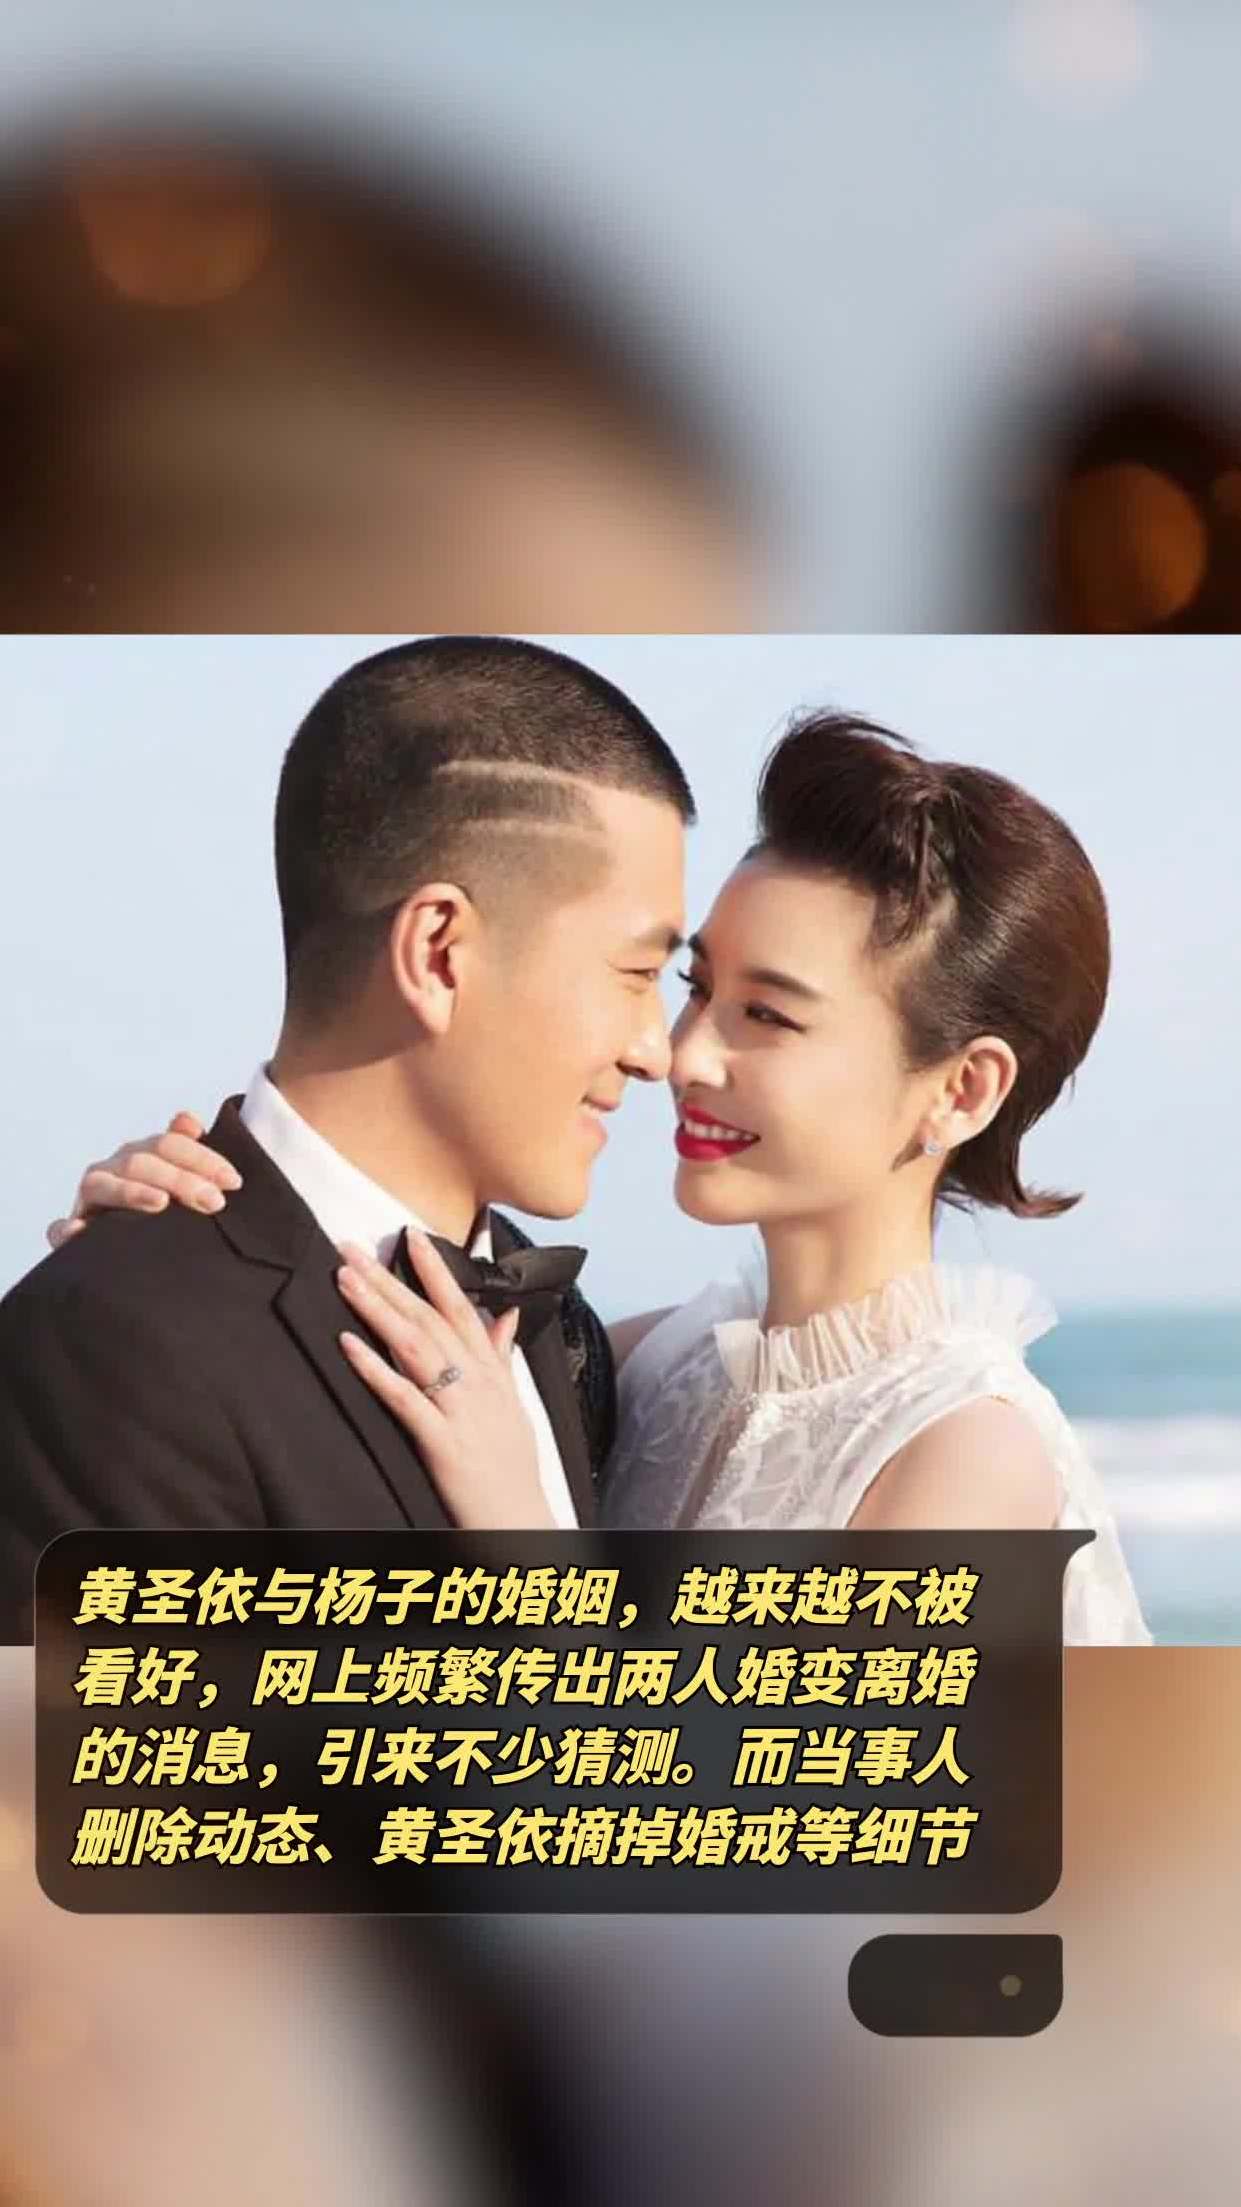 黄圣依与杨子的婚姻越来越不被看好网上频繁传出两人婚变离婚的消息